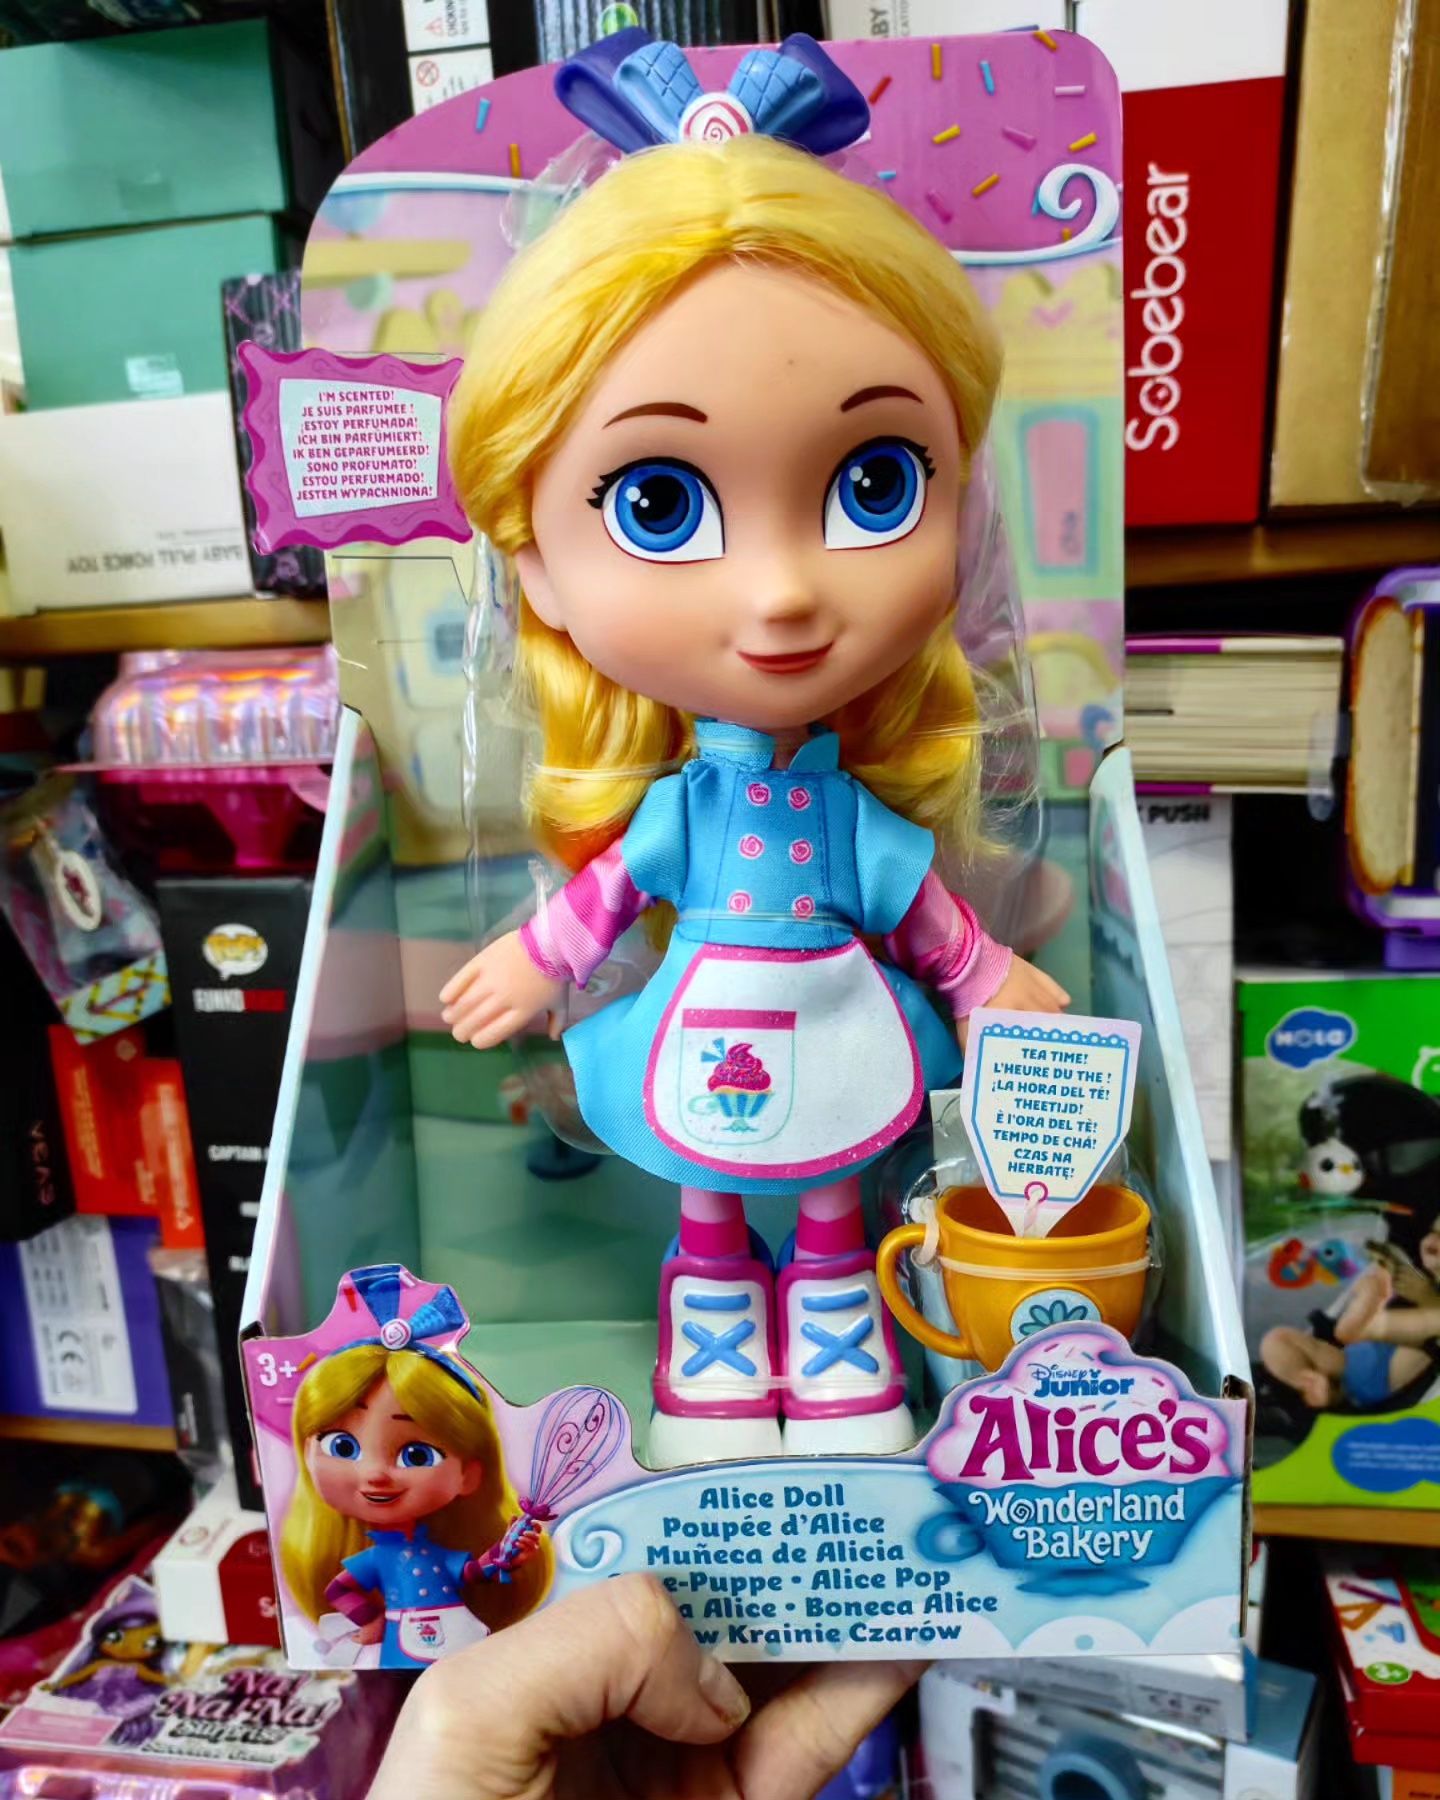 Пекарня Аліси Aleces in wonderland bakery лялька Аліса